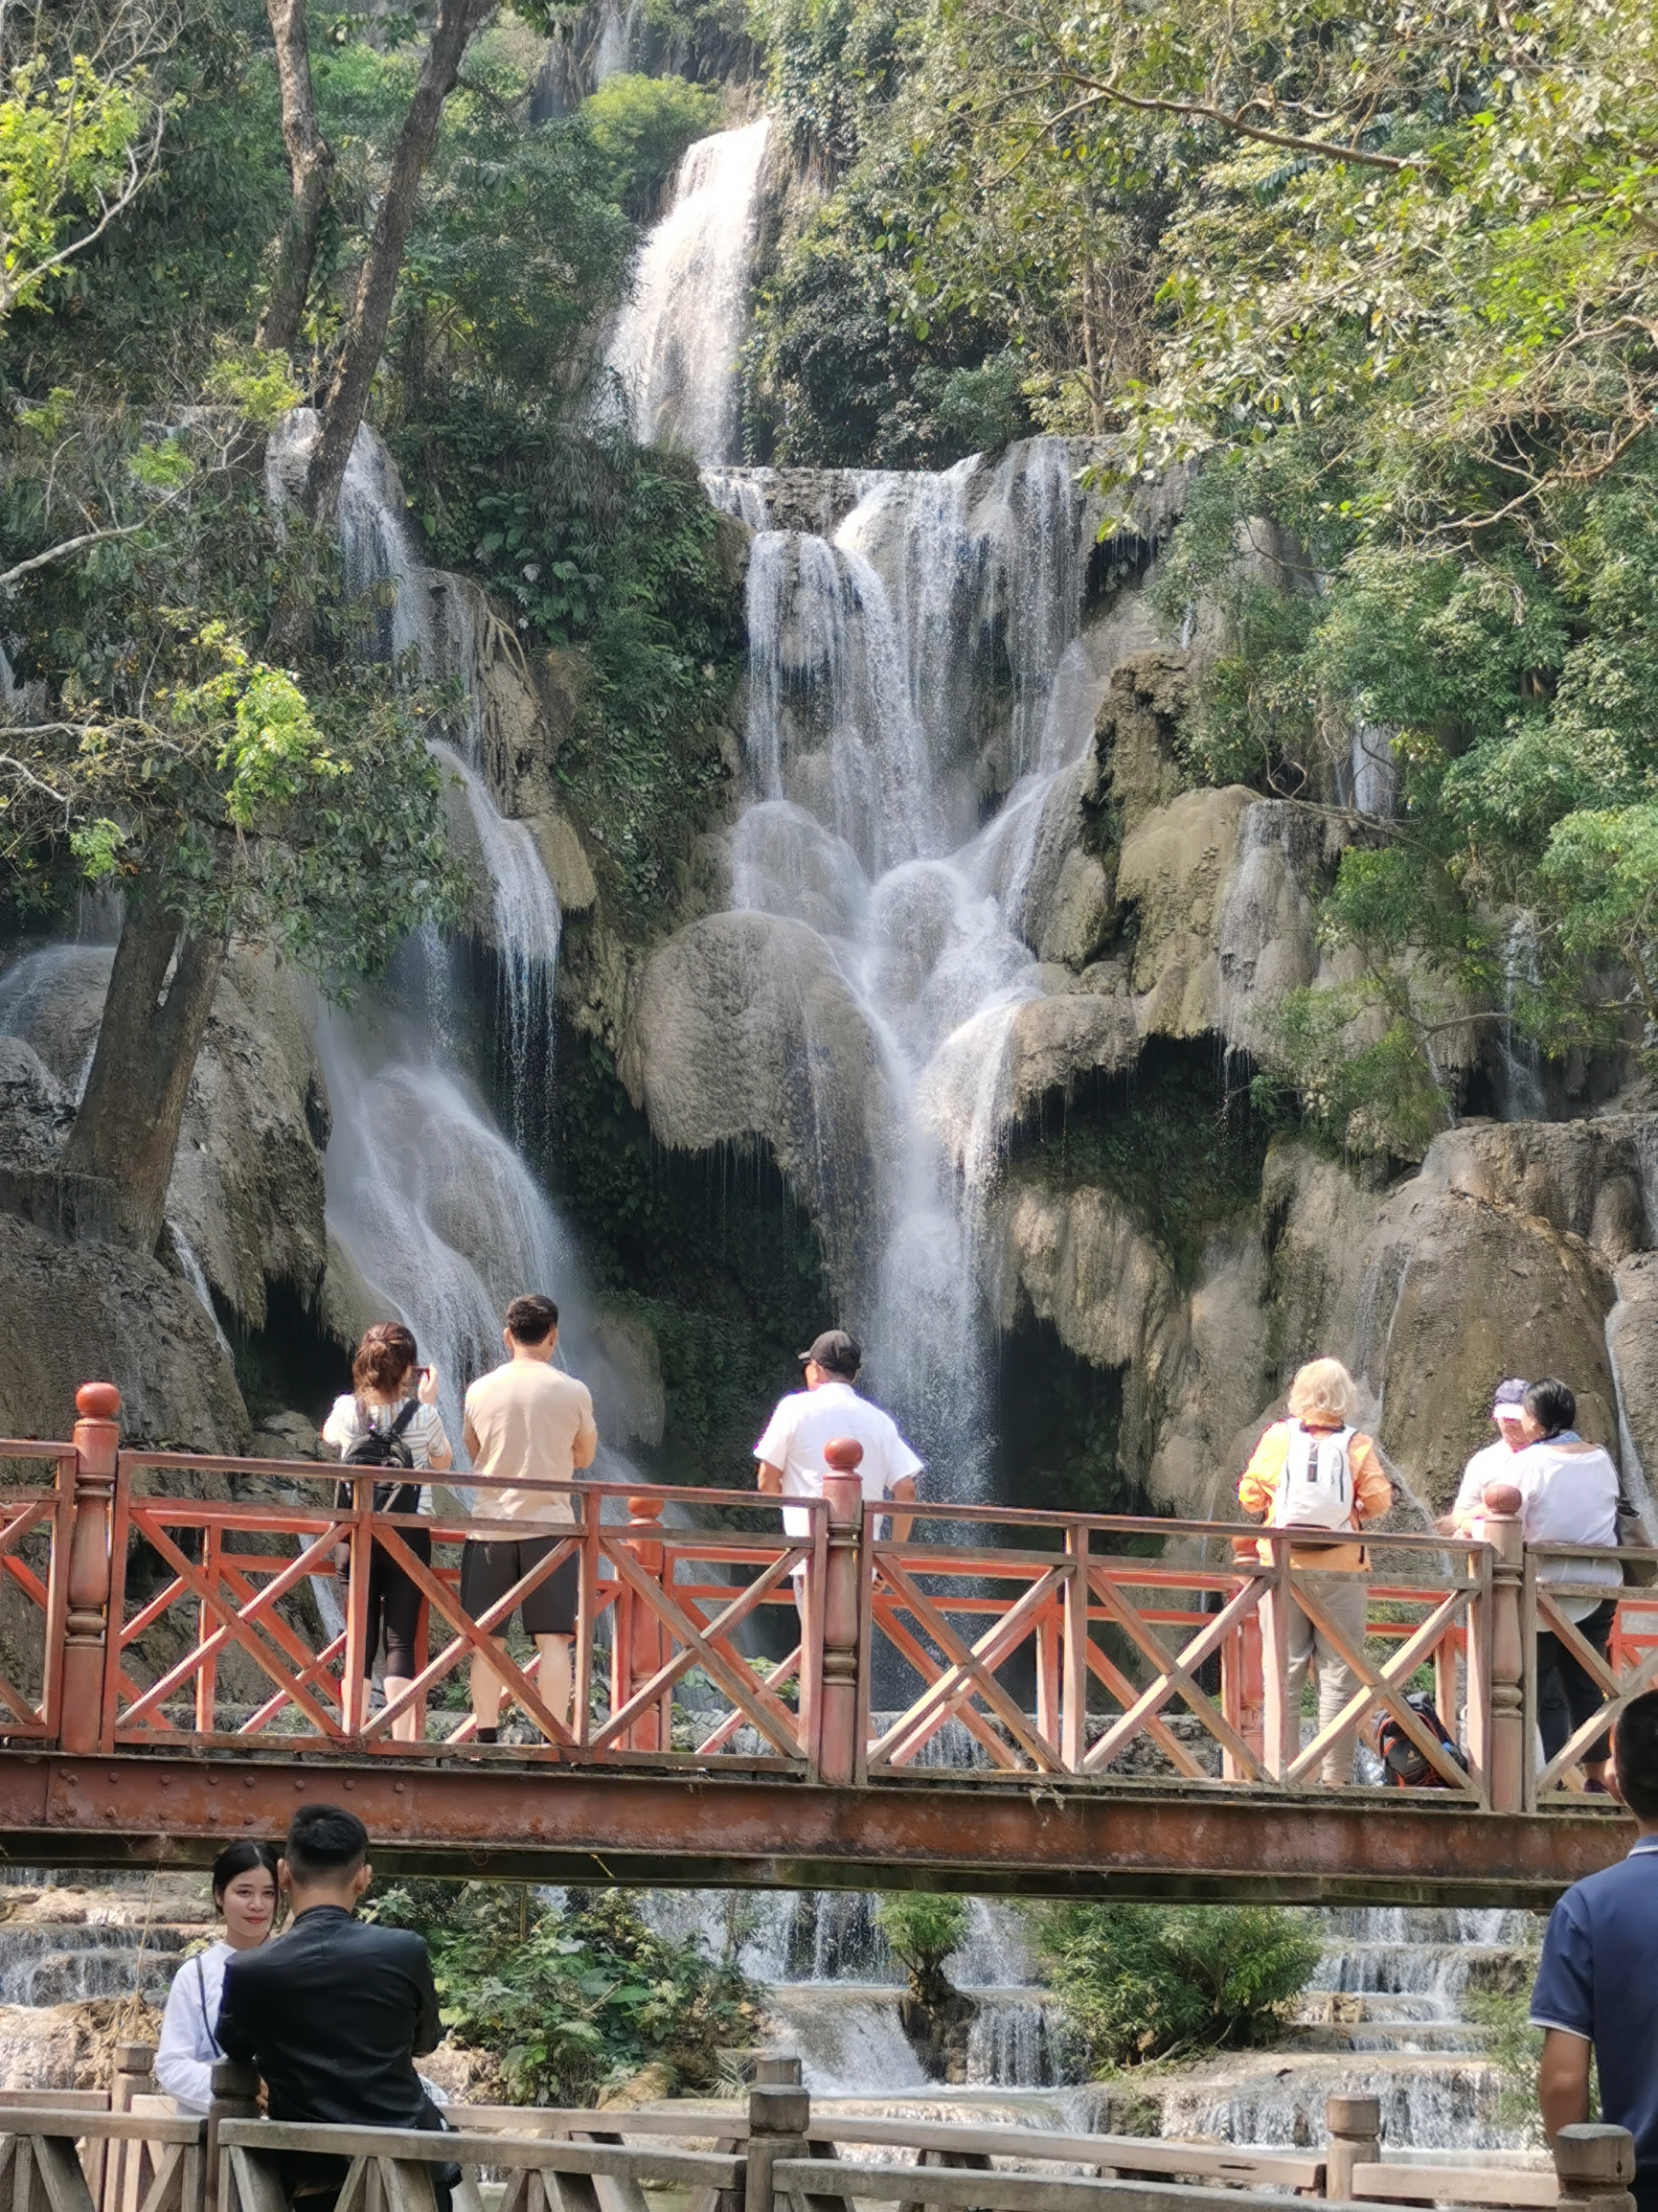 老挝还没经历过大规模的开发，这里的生态环境还是保持着原始状态，成为一个理想的旅游目的地。